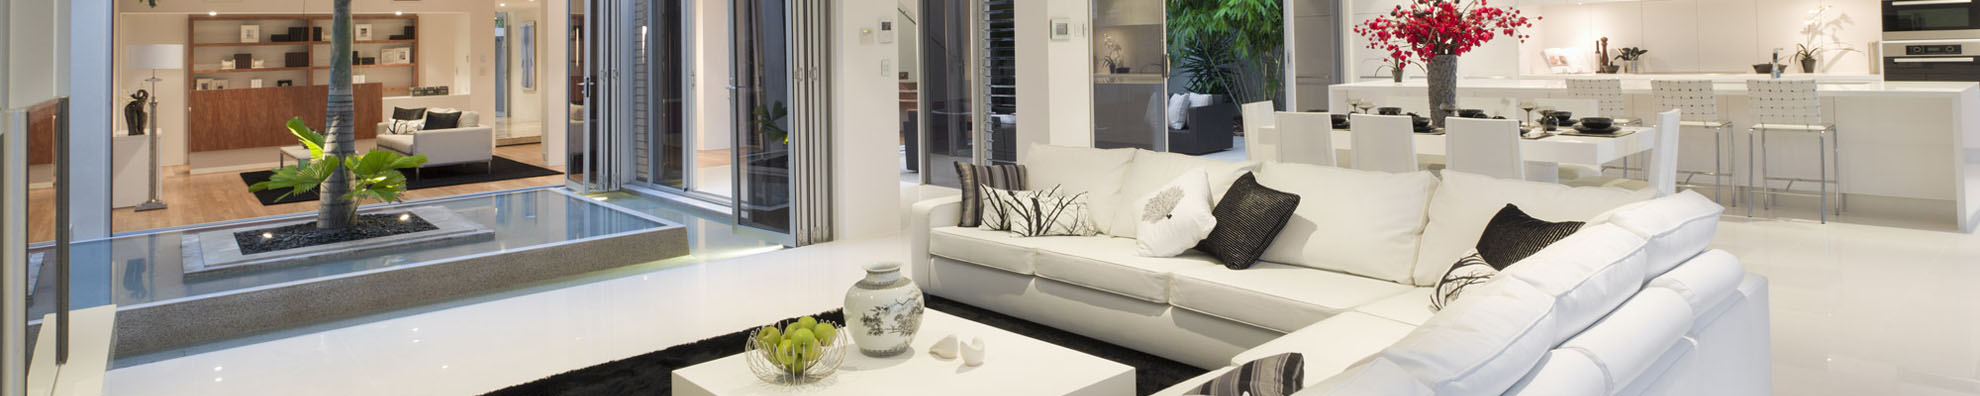 nowoczesny apartament z białą sofą